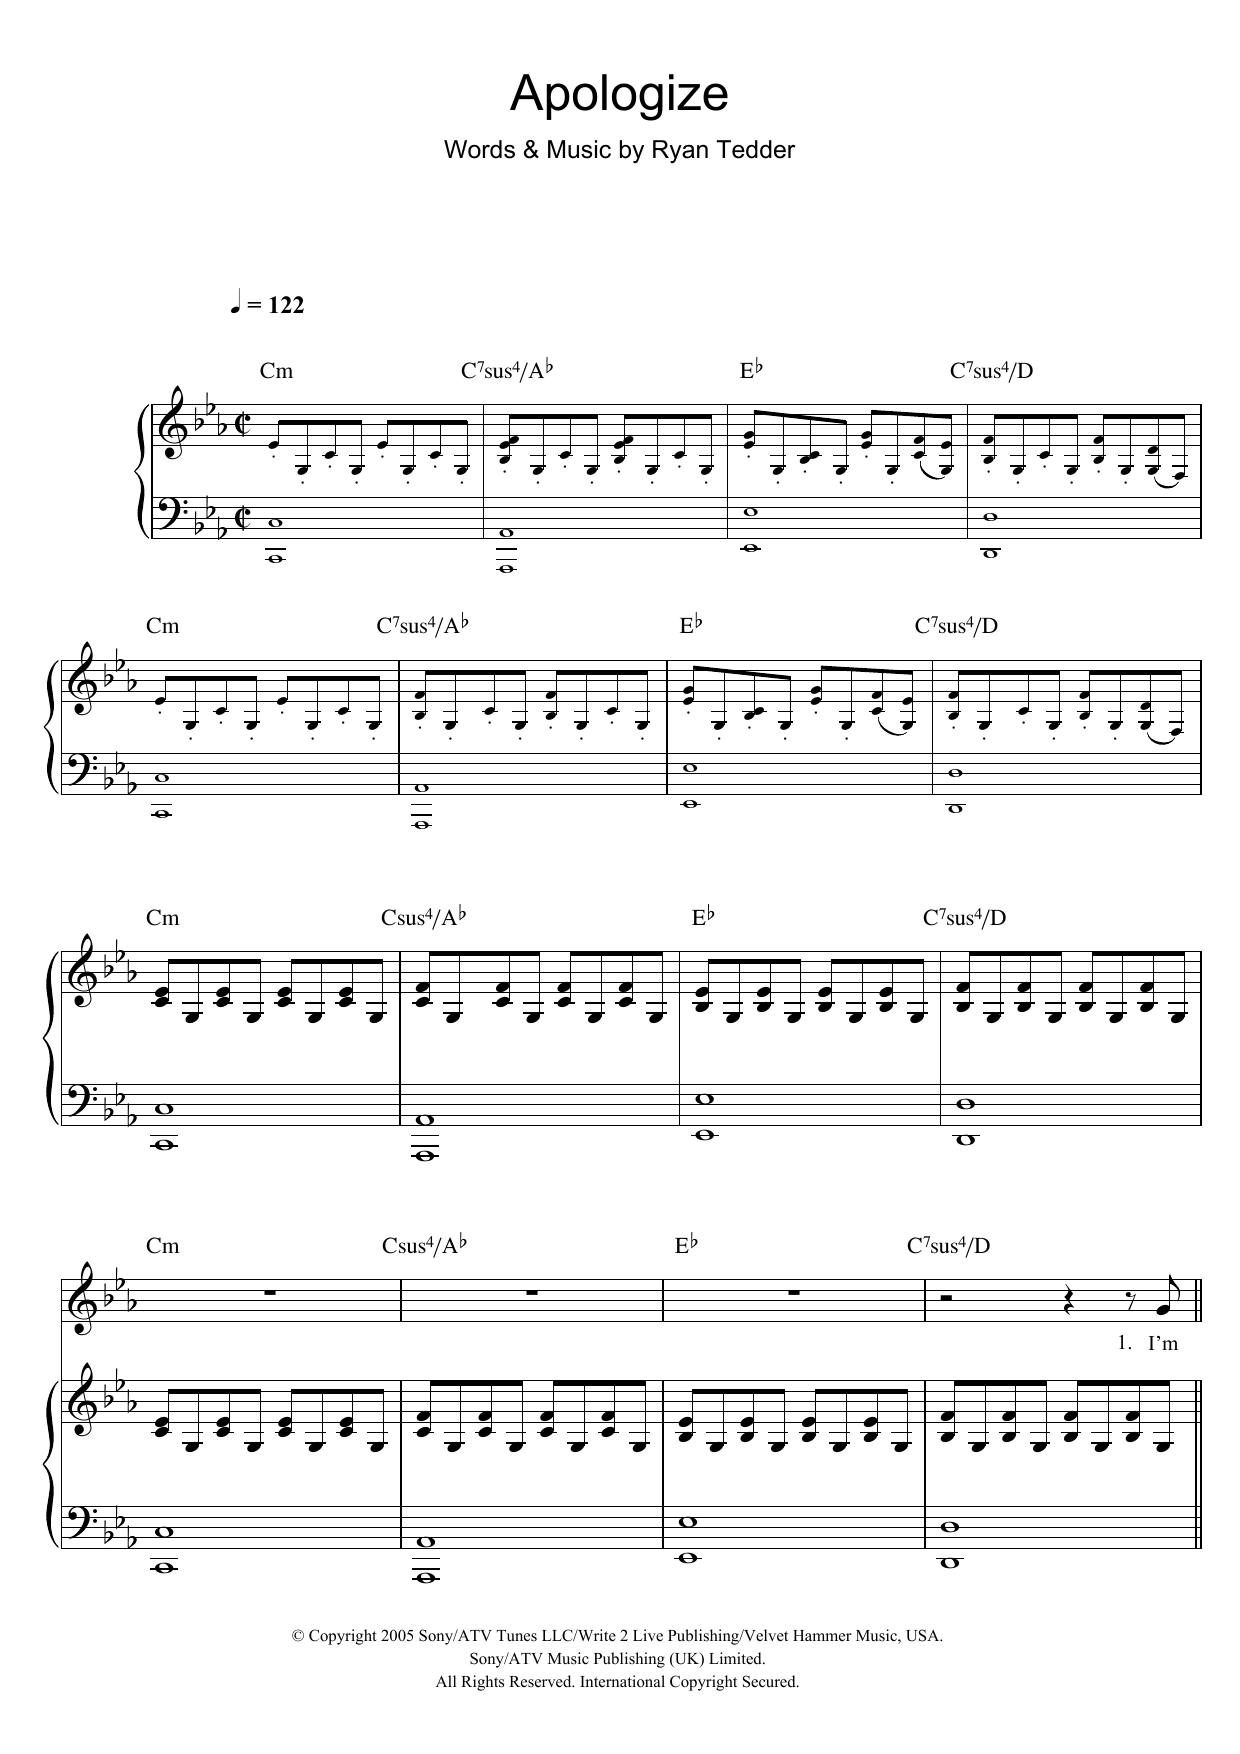 Apologize Sheet Music OneRepublic Piano Vocal Guitar Chords - Apologize Piano Sheet Music Free Printable